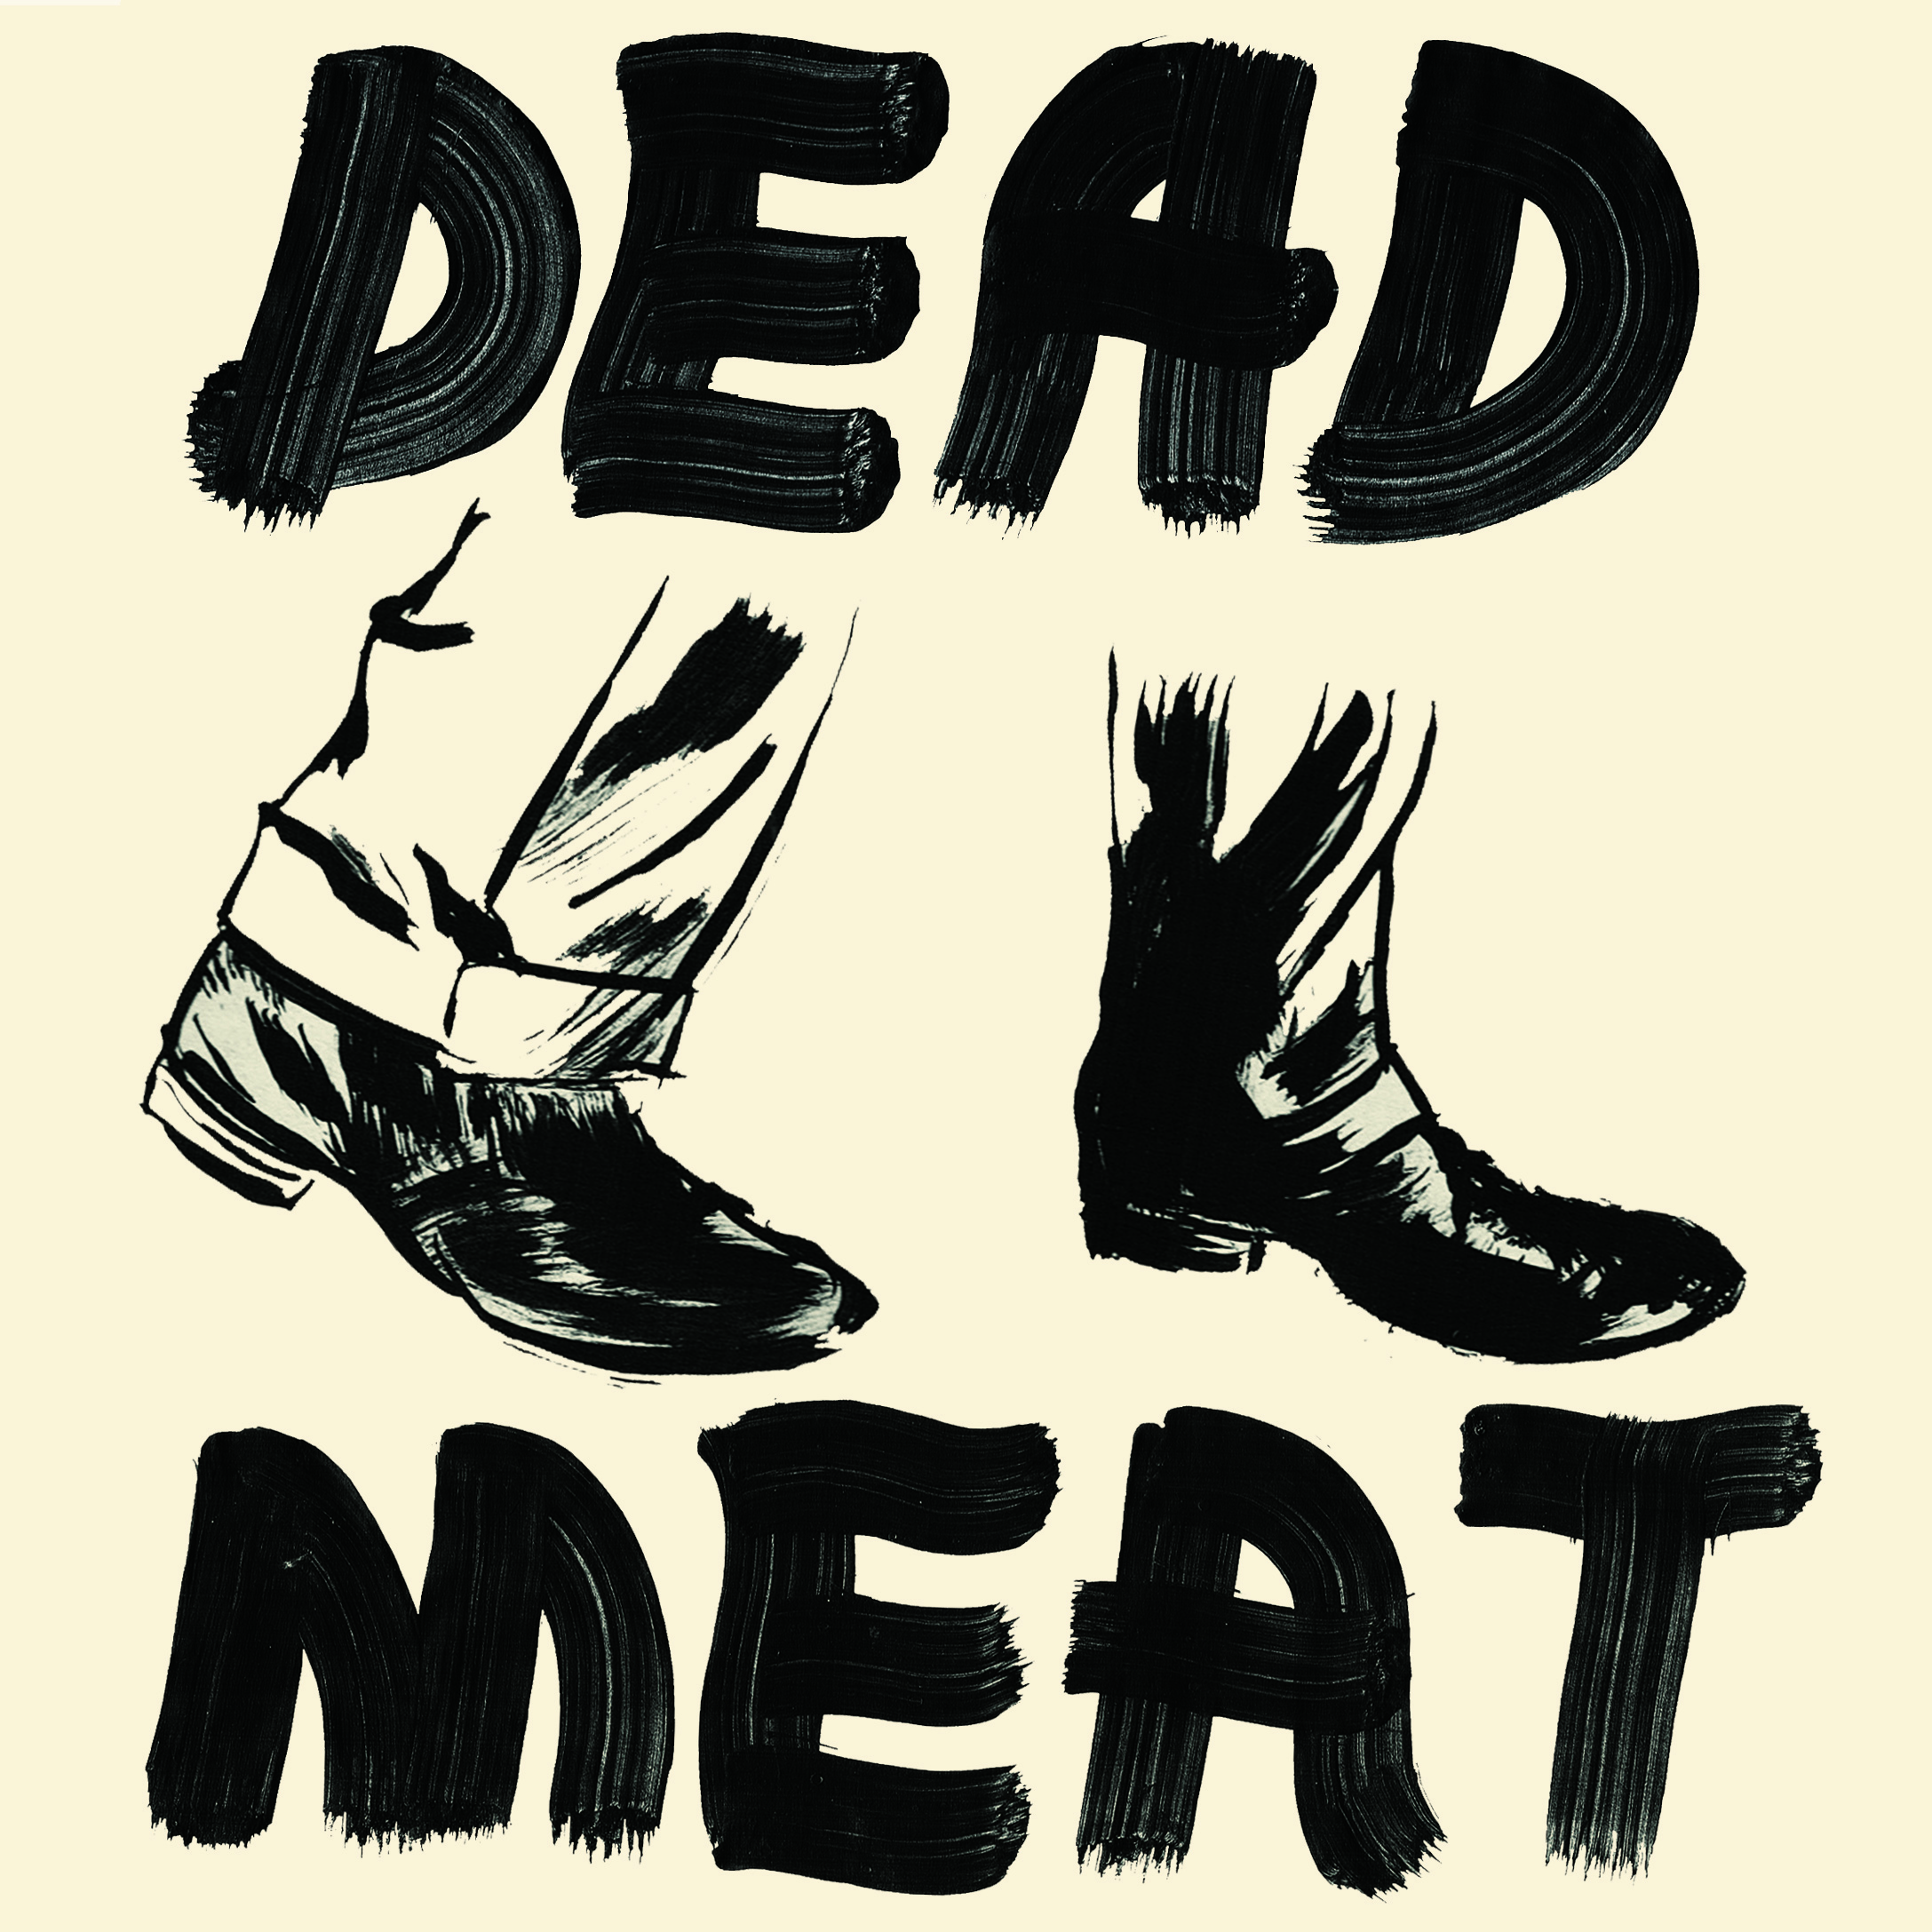 Dead meat